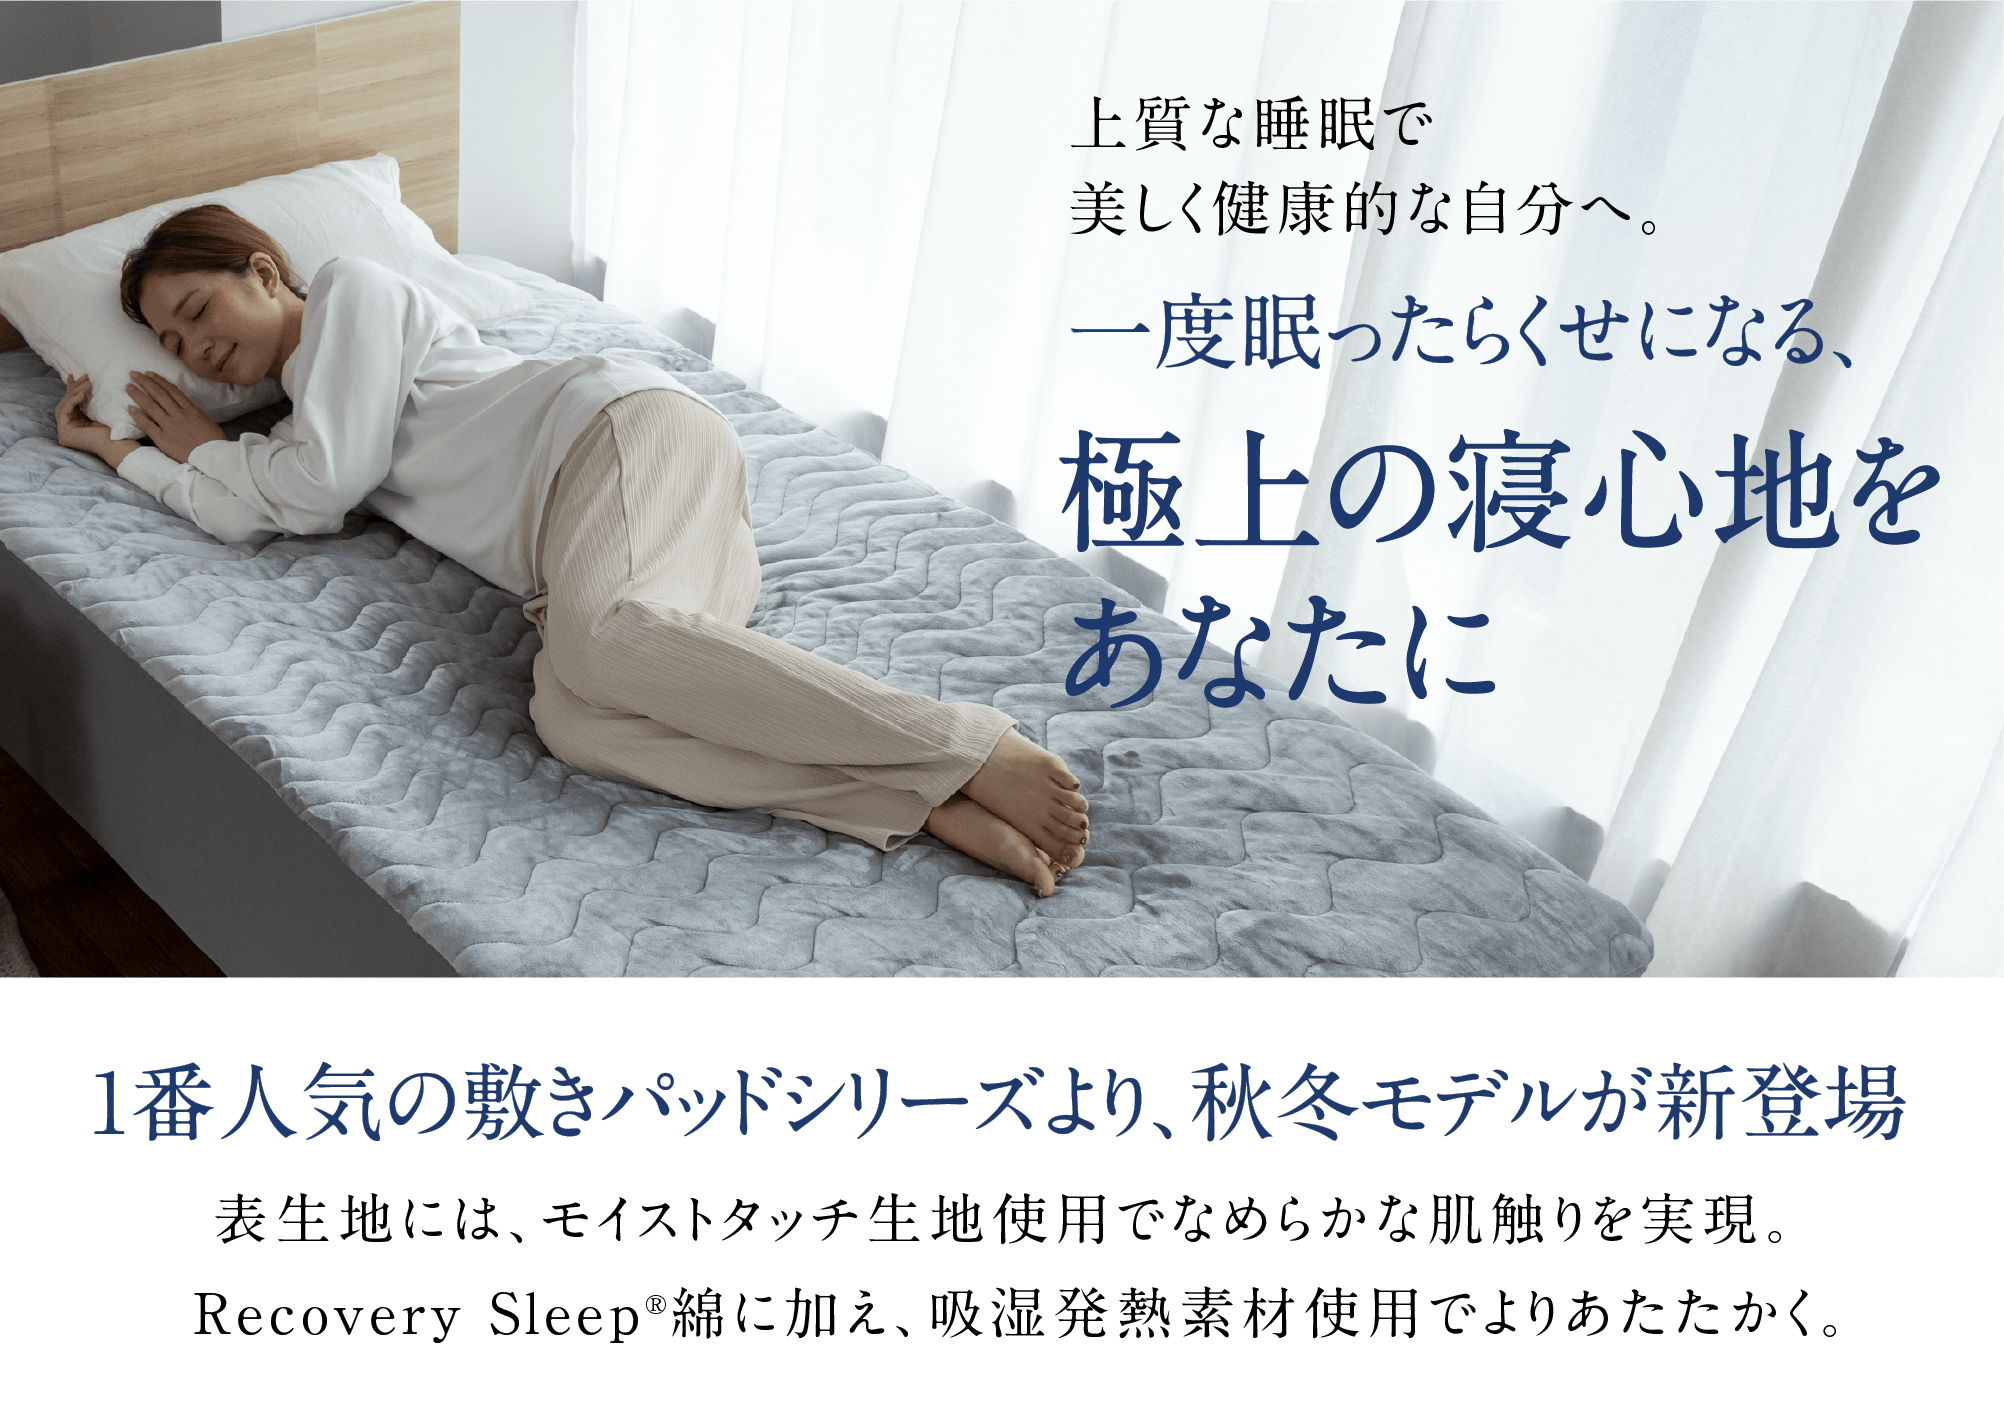 上質な睡眠で美しく健康的な自分へ。一度眠ったらくせになる、極上の寝心地をあなたに 1番人気の敷きパッドシリーズより、秋冬モデルが新登場　　表生地には、モイストタッチ生地使用でなめらかな肌触りを実現。Recovery Sleep®綿に加え、吸湿発熱素材使用でよりあたたかく。